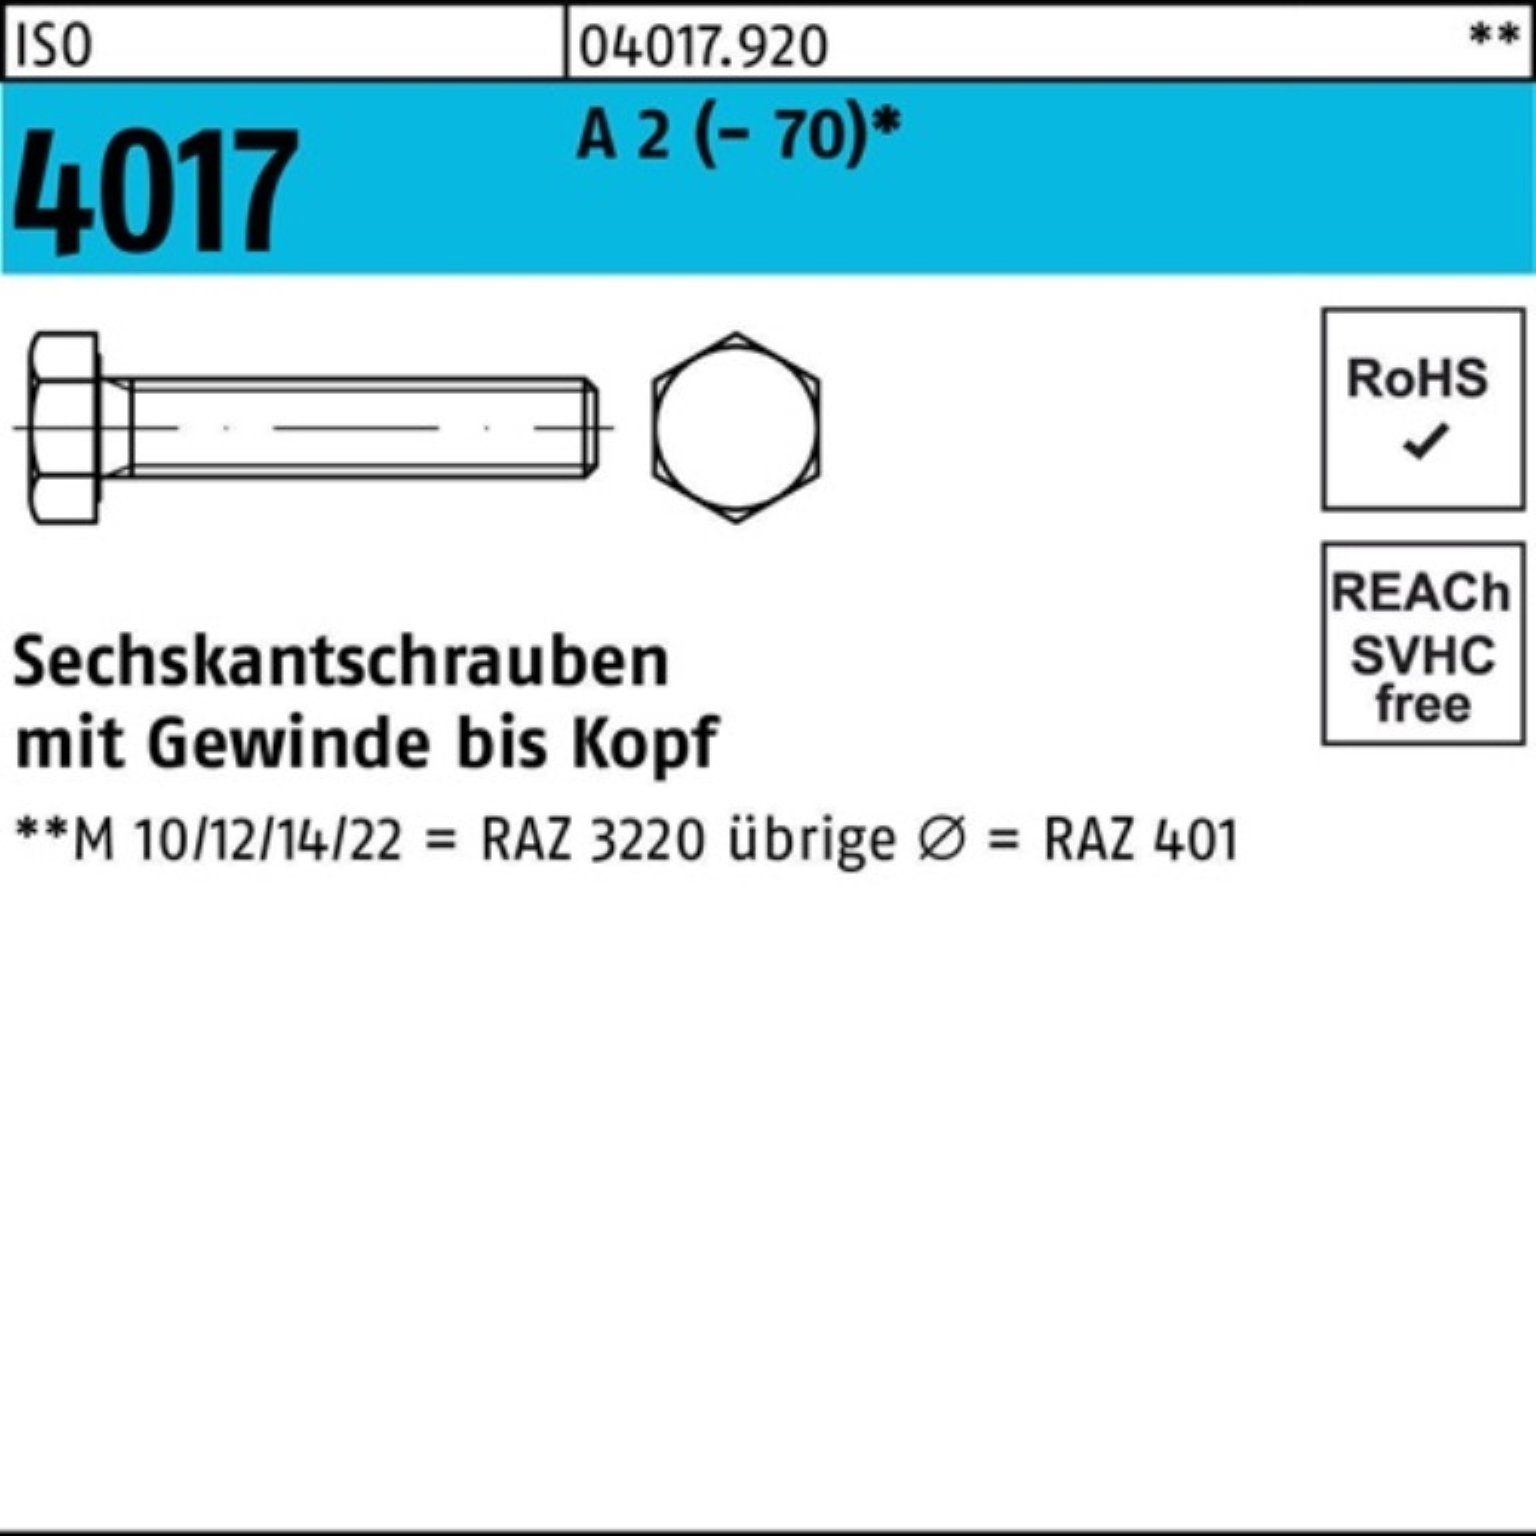 Bufab Sechskantschraube 100er Pack Sechskantschraube ISO 4017 VG M16x 60 A 2 (70) 25 Stück